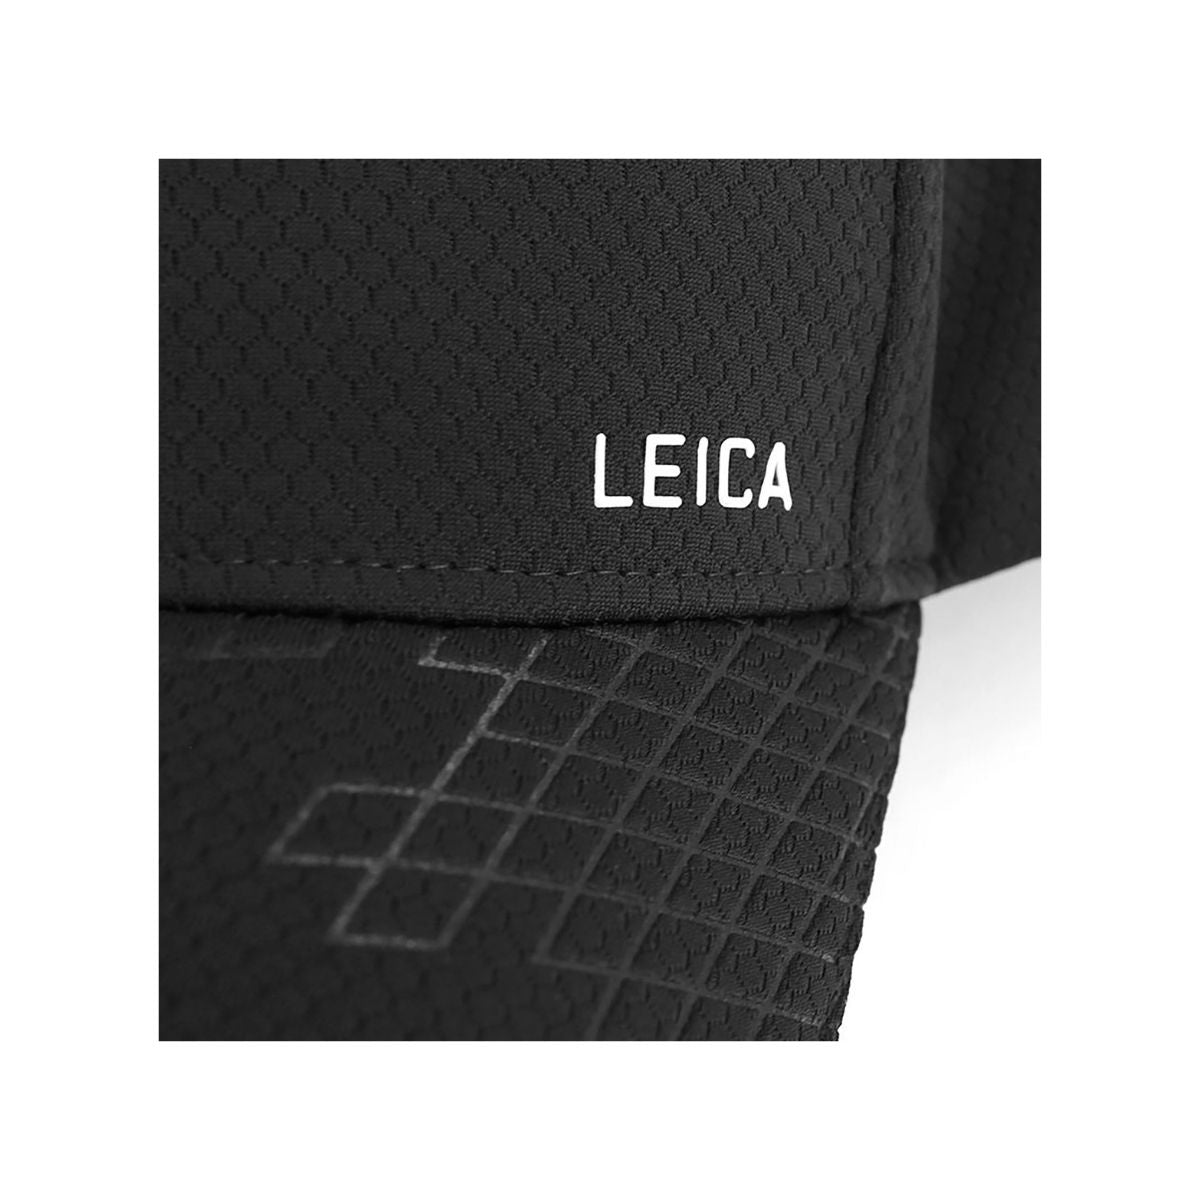 Sapca Leica Engraving Rubber